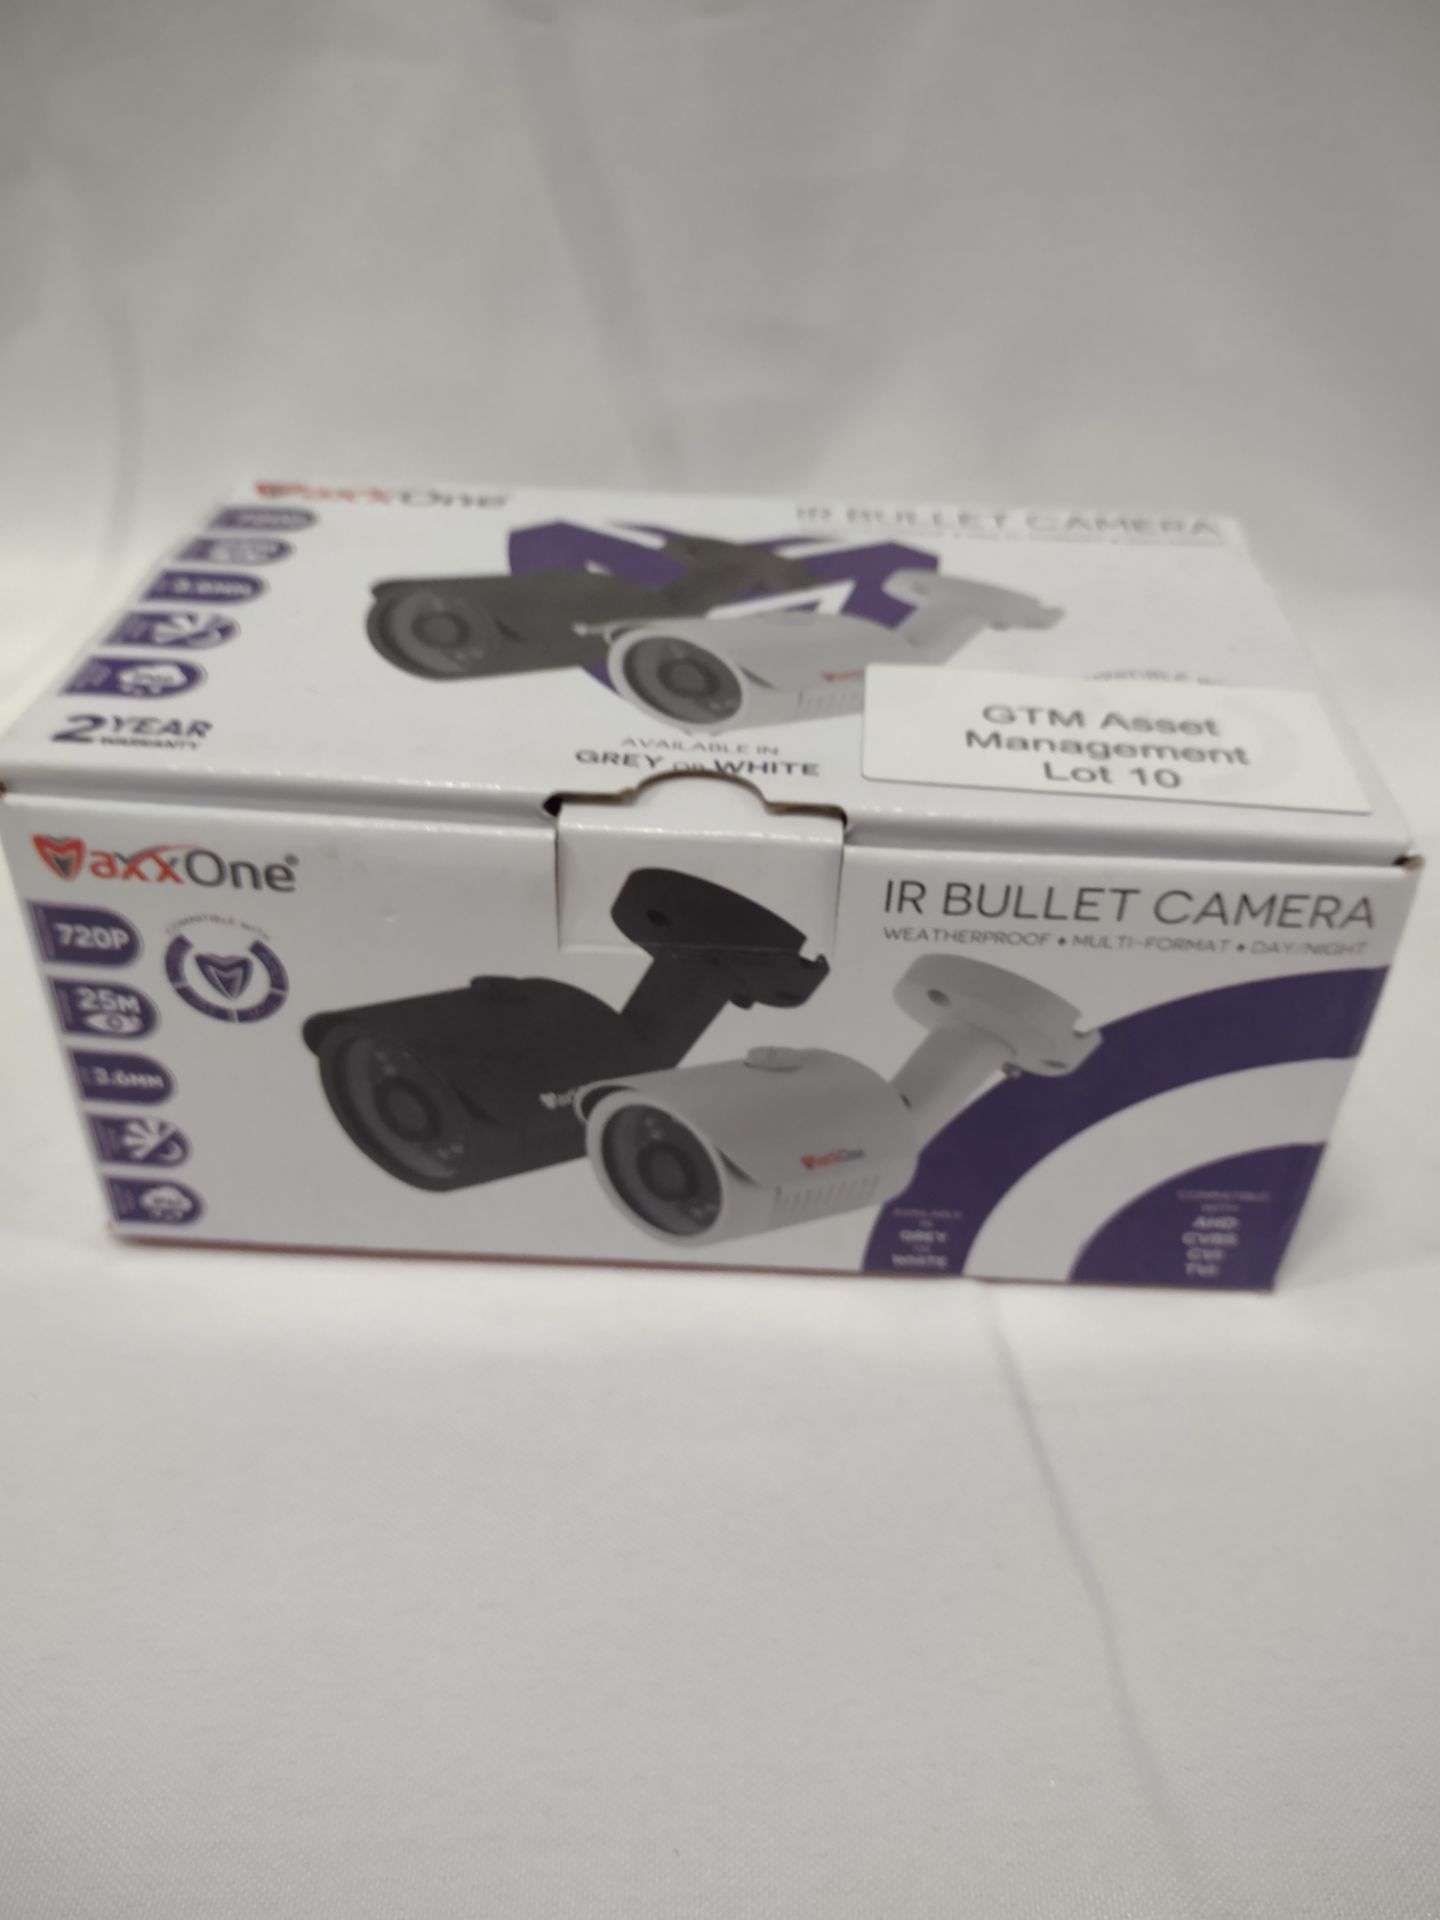 MaxxOne IR Bullet Camera. RRP £49.99 - GRADE U